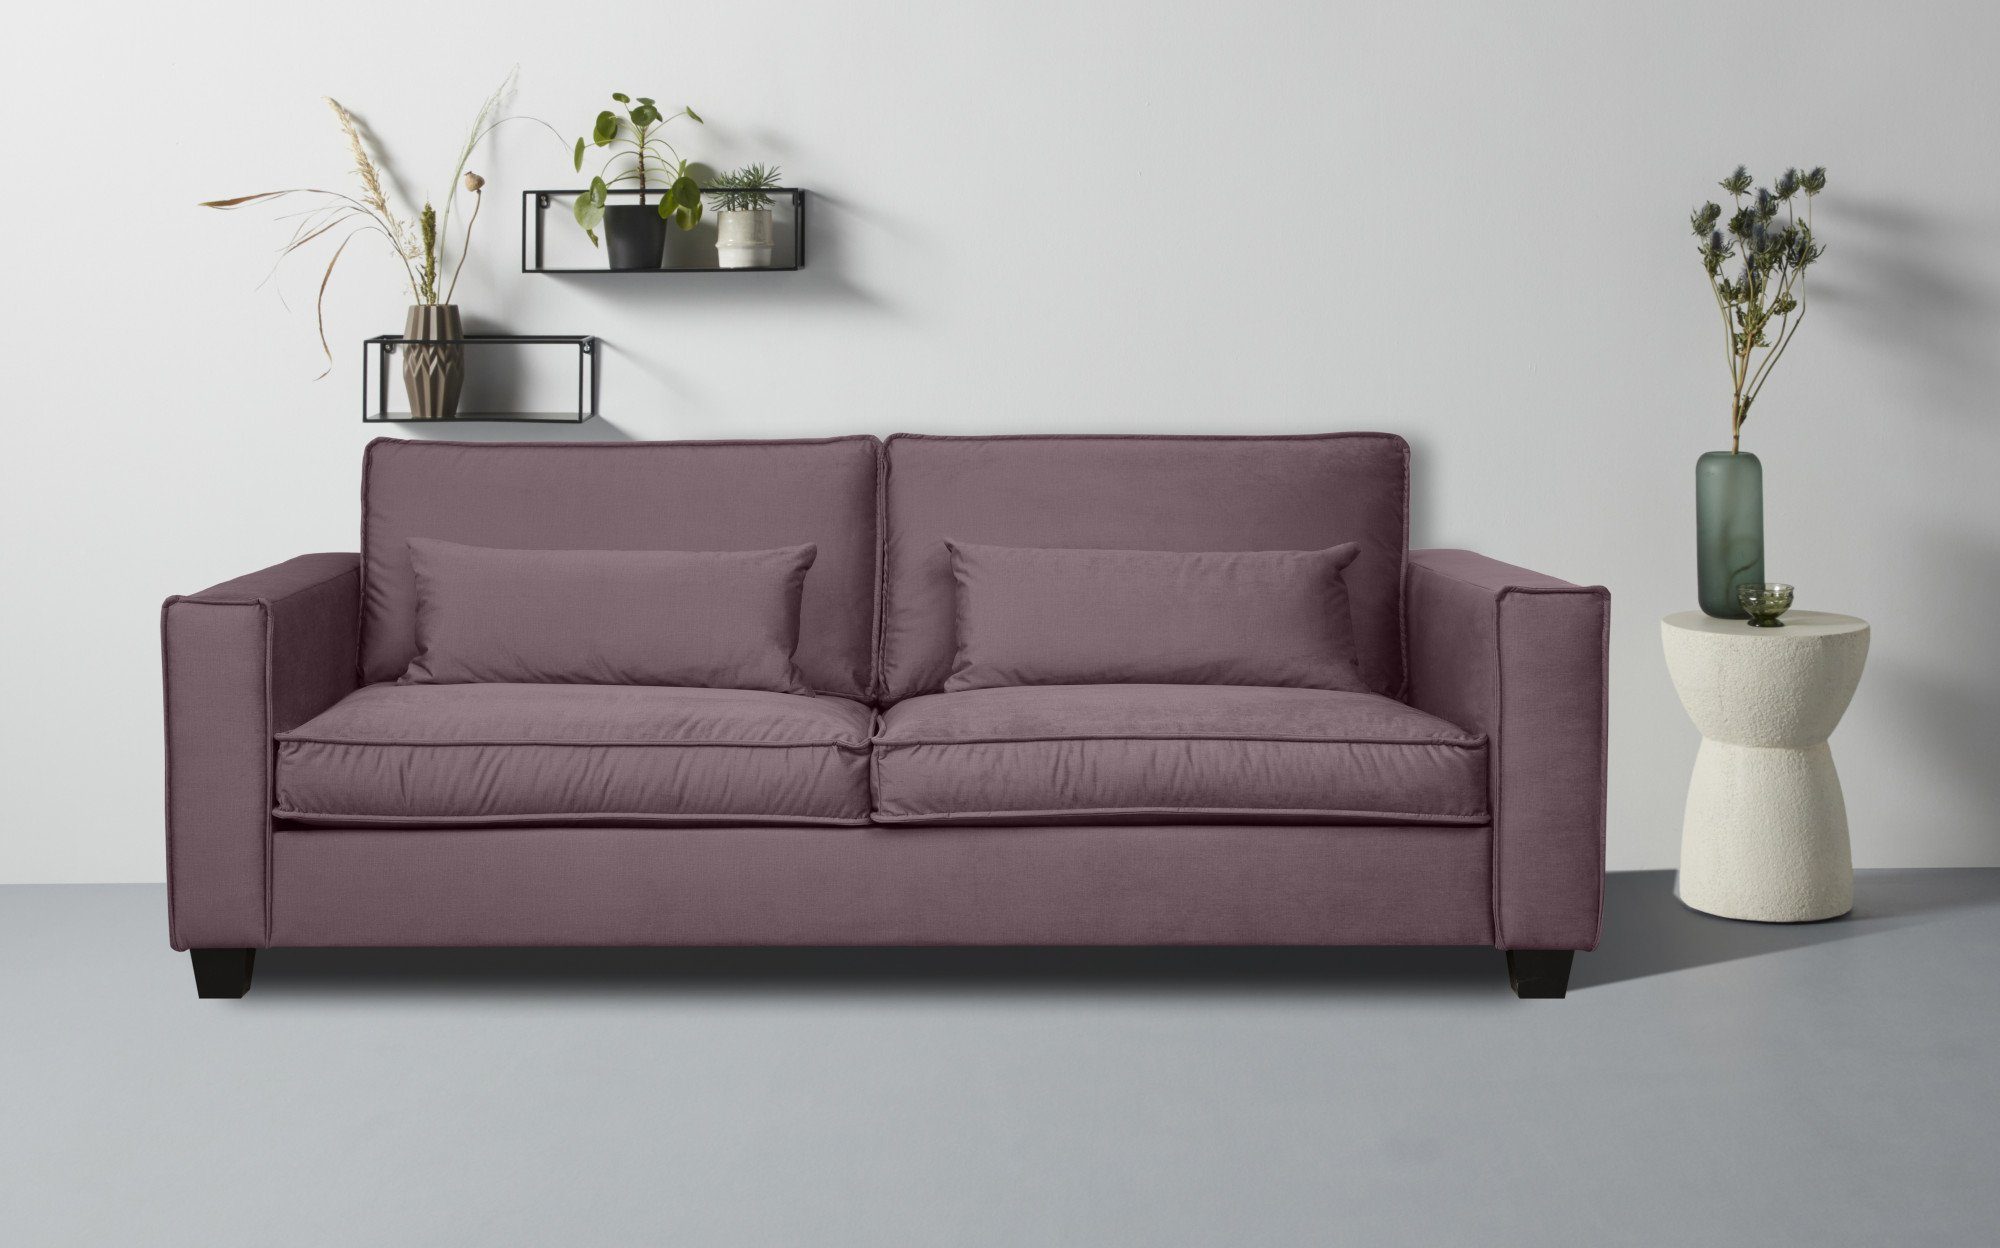 Home affaire 3-Sitzer Tilques, bequeme Sitzgelegenheiten, viele Farben verfügbar violet pink